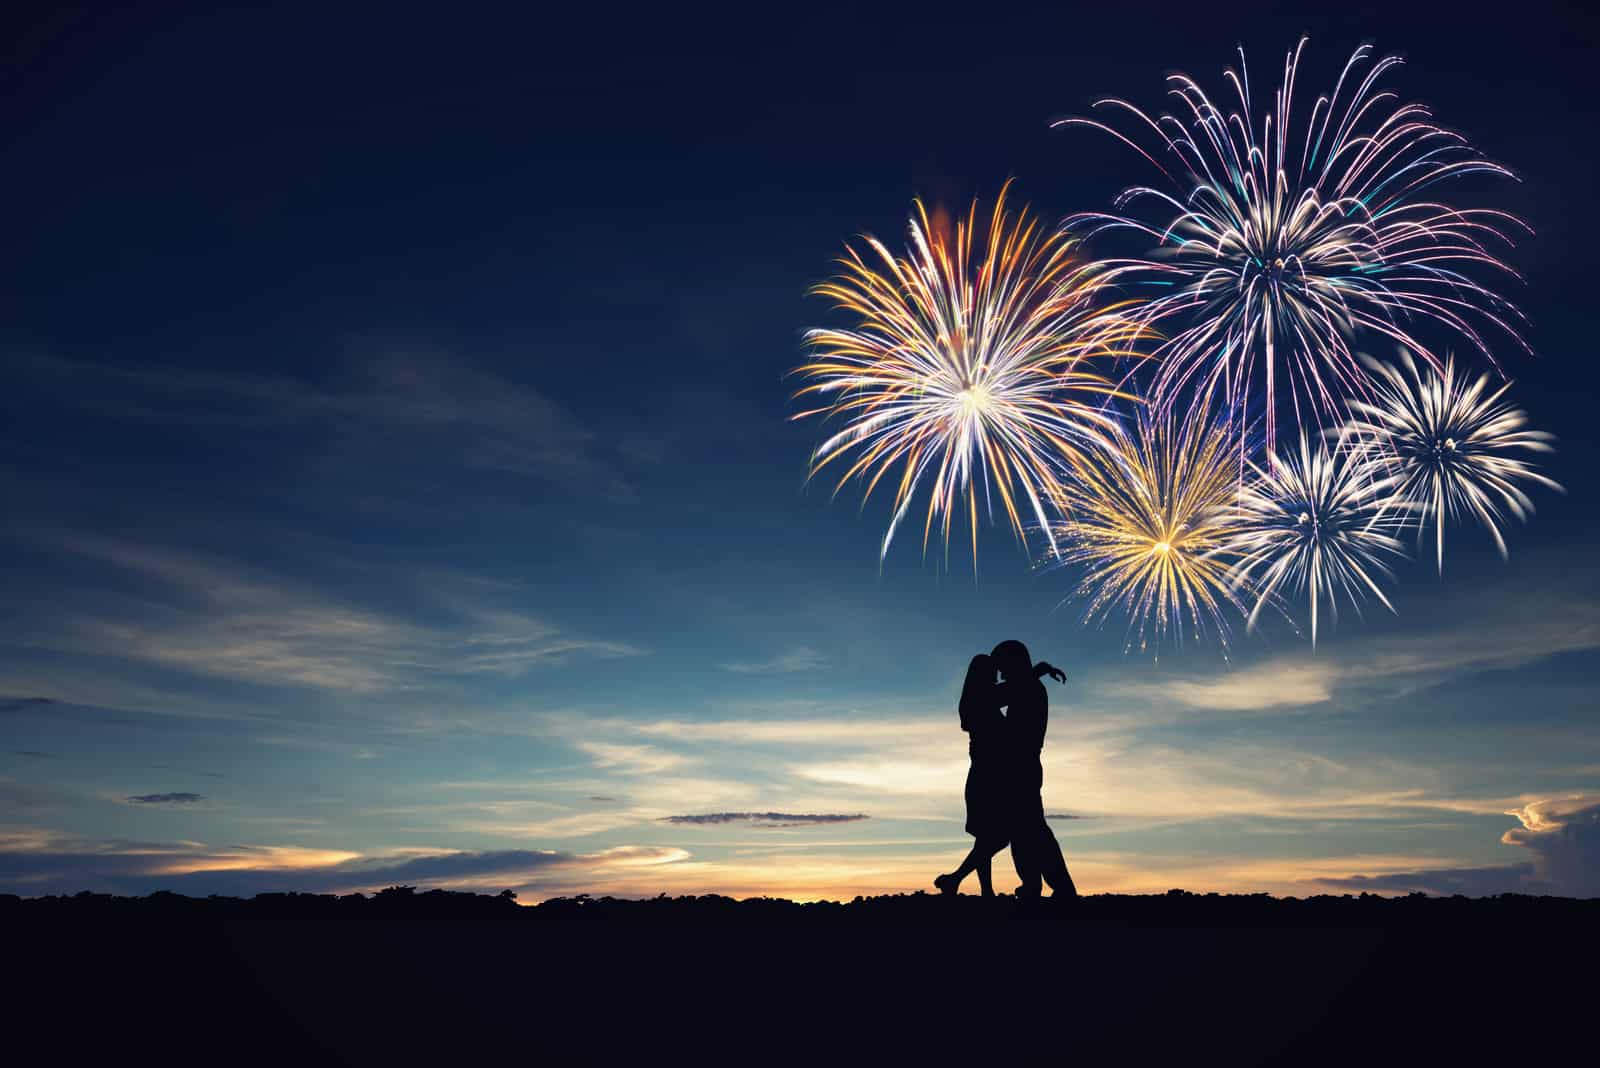 Mann und Frau im Natursonnenuntergang, Feuerwerkshintergrund